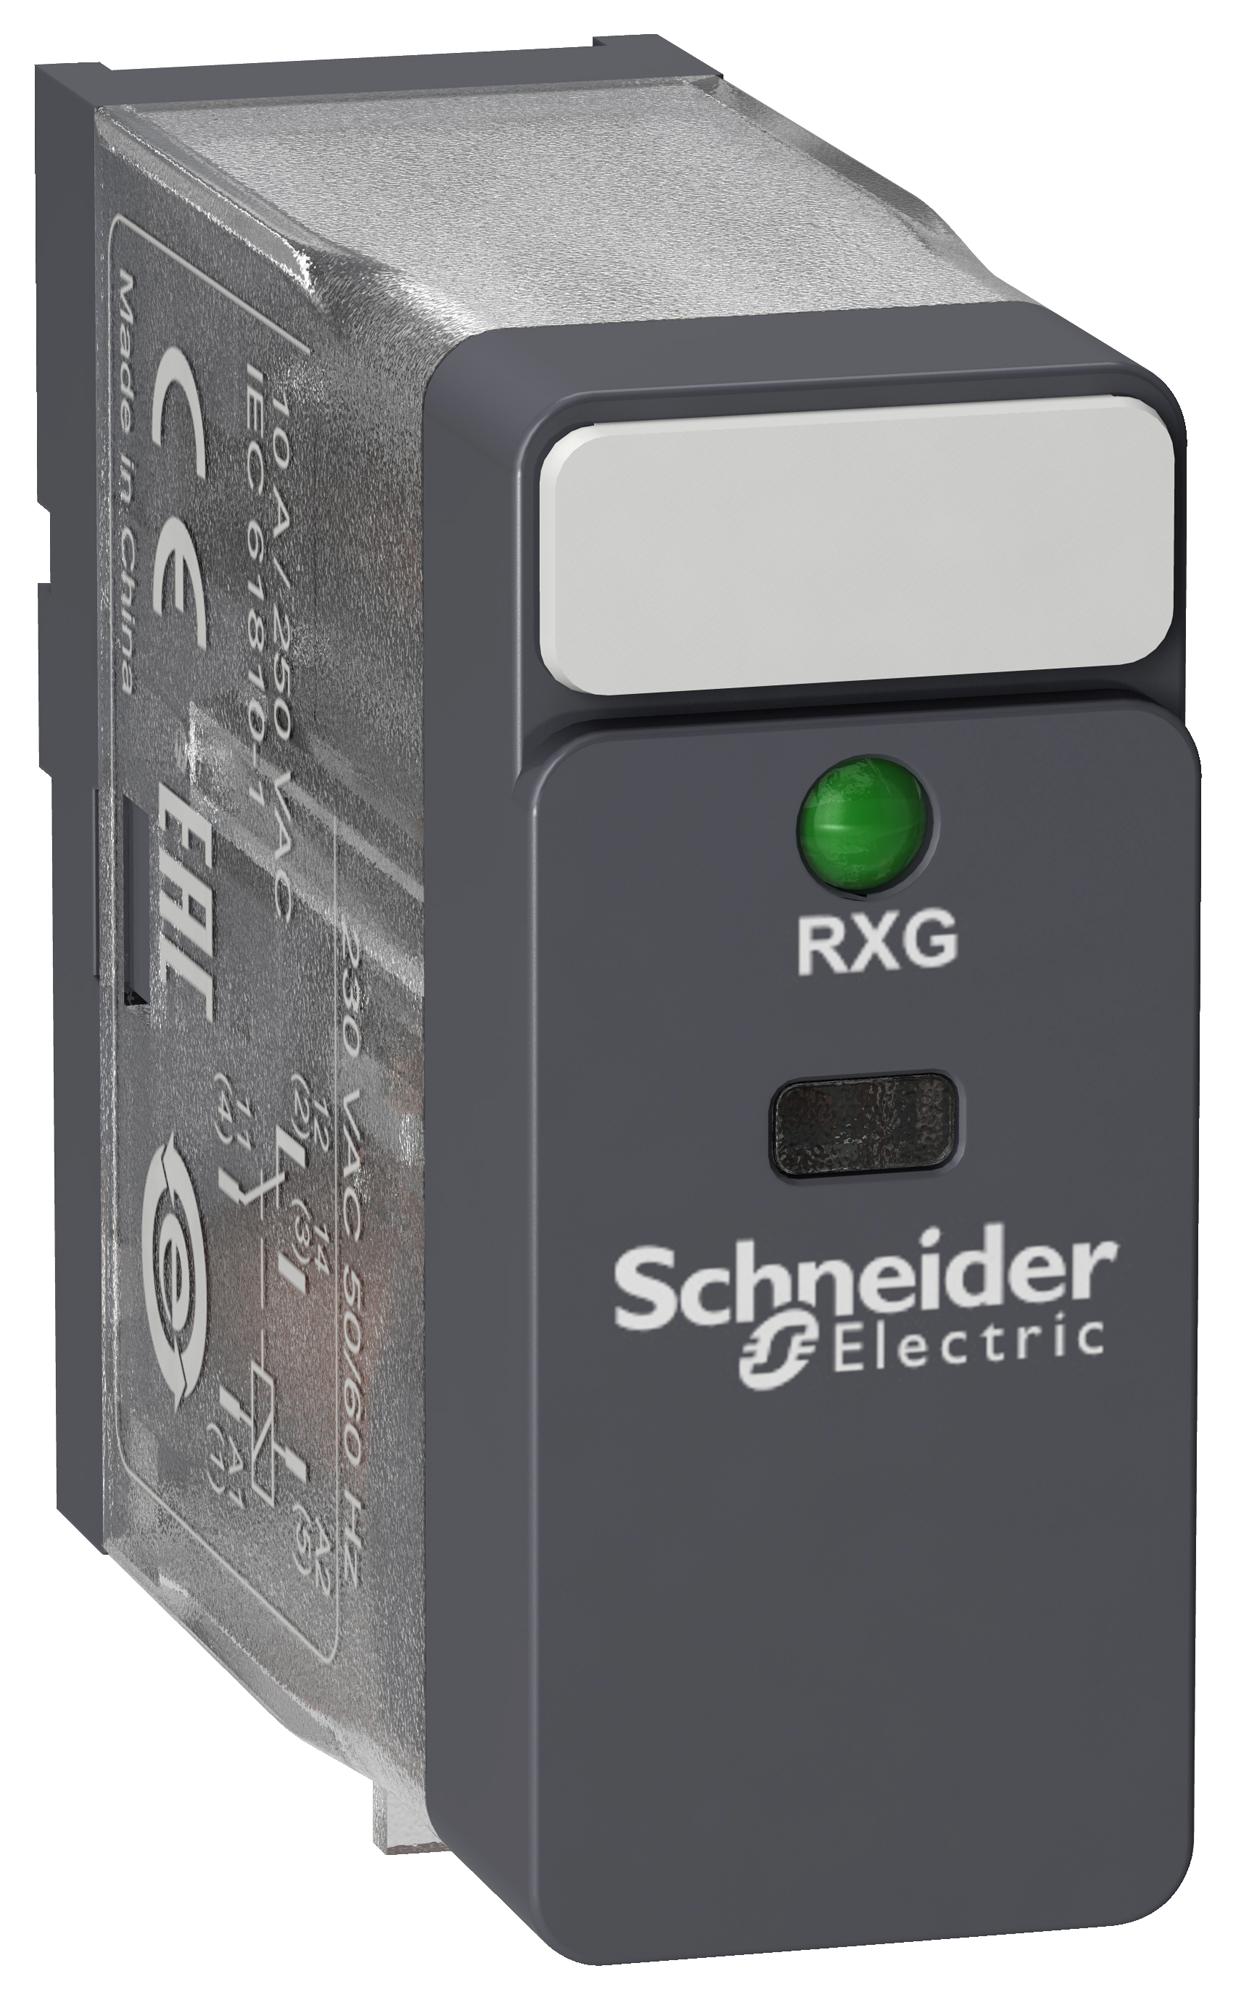 RXG13B7 POWER RELAY, SPDT, 10A, 250VAC SCHNEIDER ELECTRIC